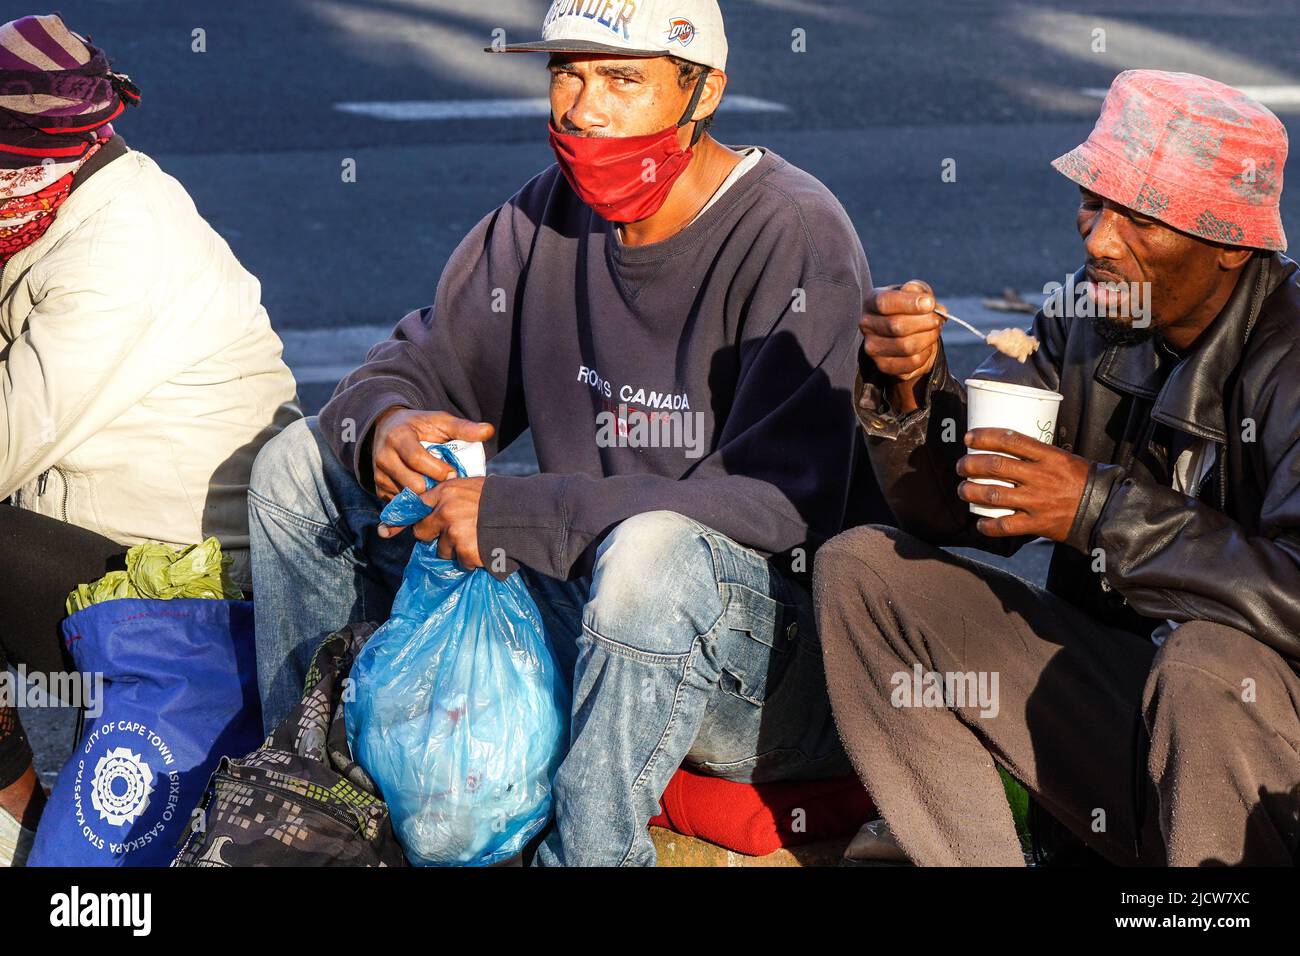 Personas sin hogar, africano, grupo, durante la pandemia de Covid en Ciudad del Cabo, Sudáfrica luciendo el concepto de máscara de cara pobreza, dificultad, vida dura Foto de stock